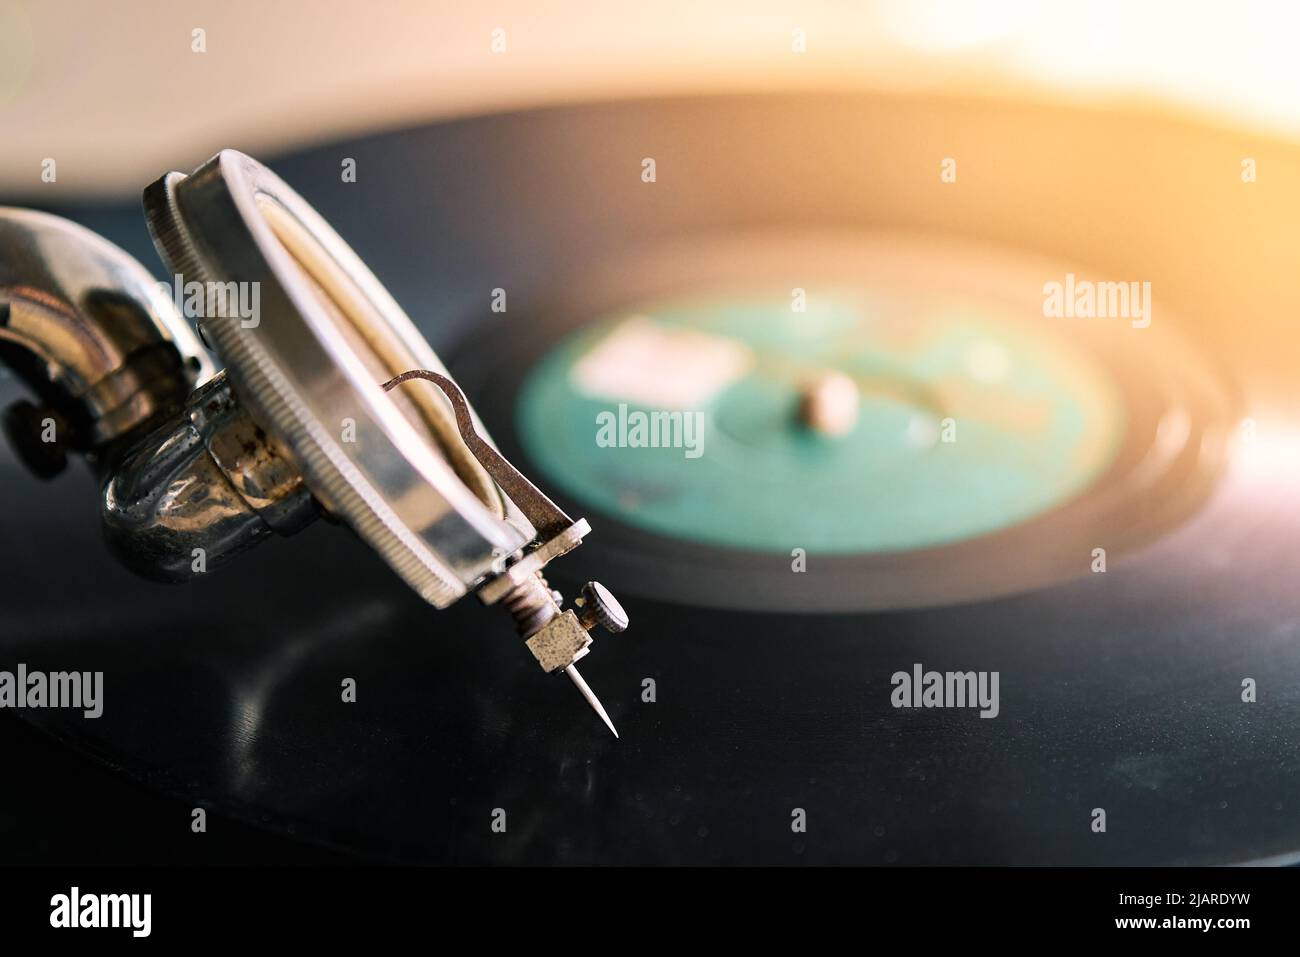 ago di un vecchio gramofono portatile con un disco in vinile ricoperto di polvere Foto Stock